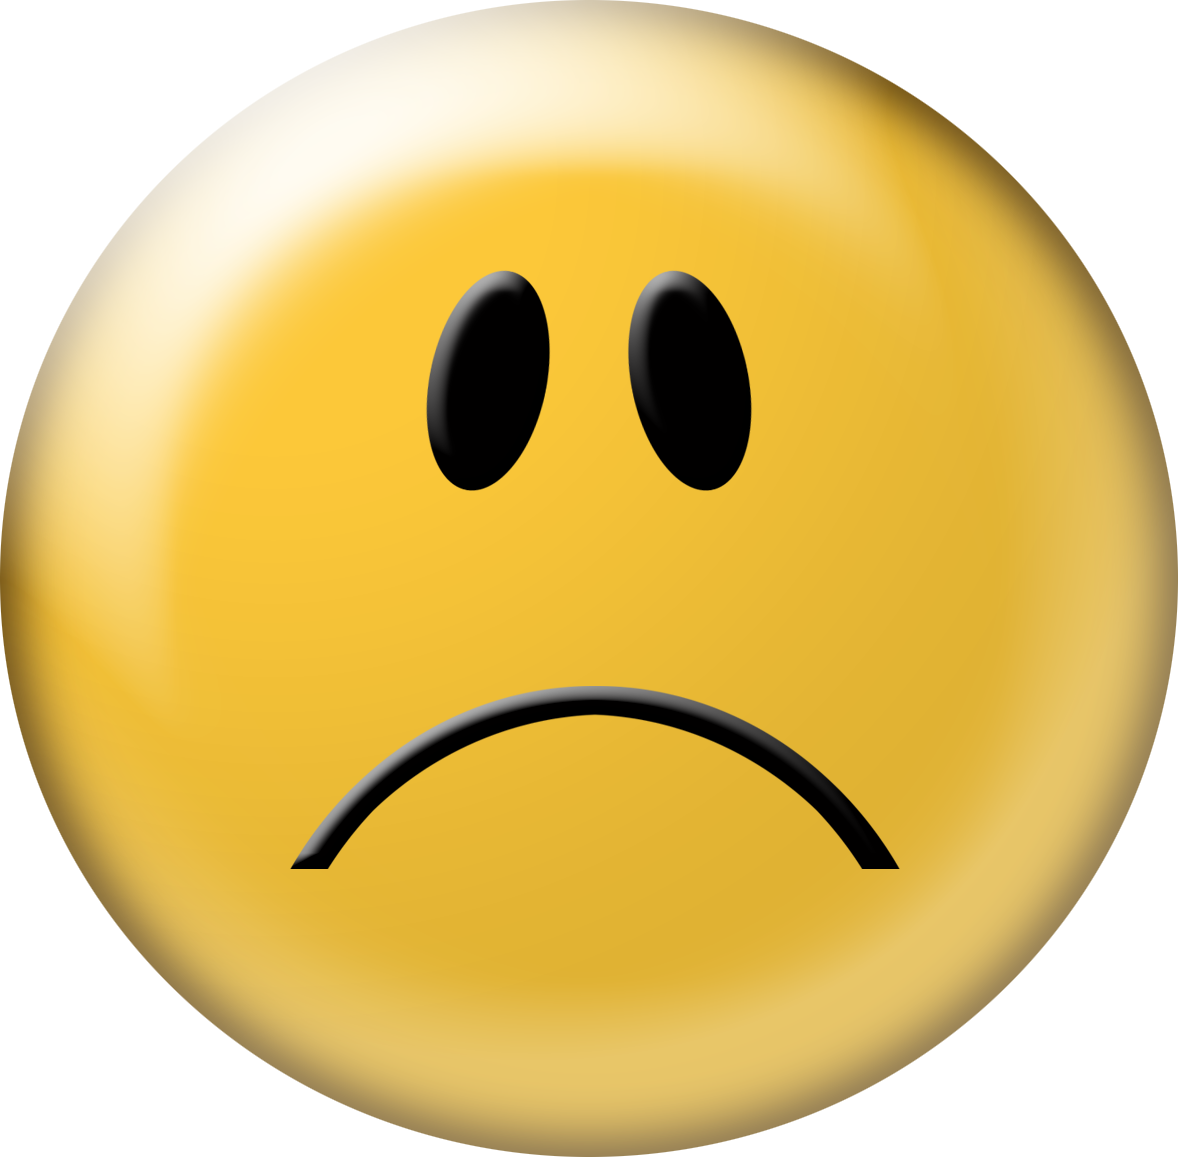 Sarge Sad Face - Roblox Sarge Sad Face Transparent PNG - 420x420 - Free  Download on NicePNG